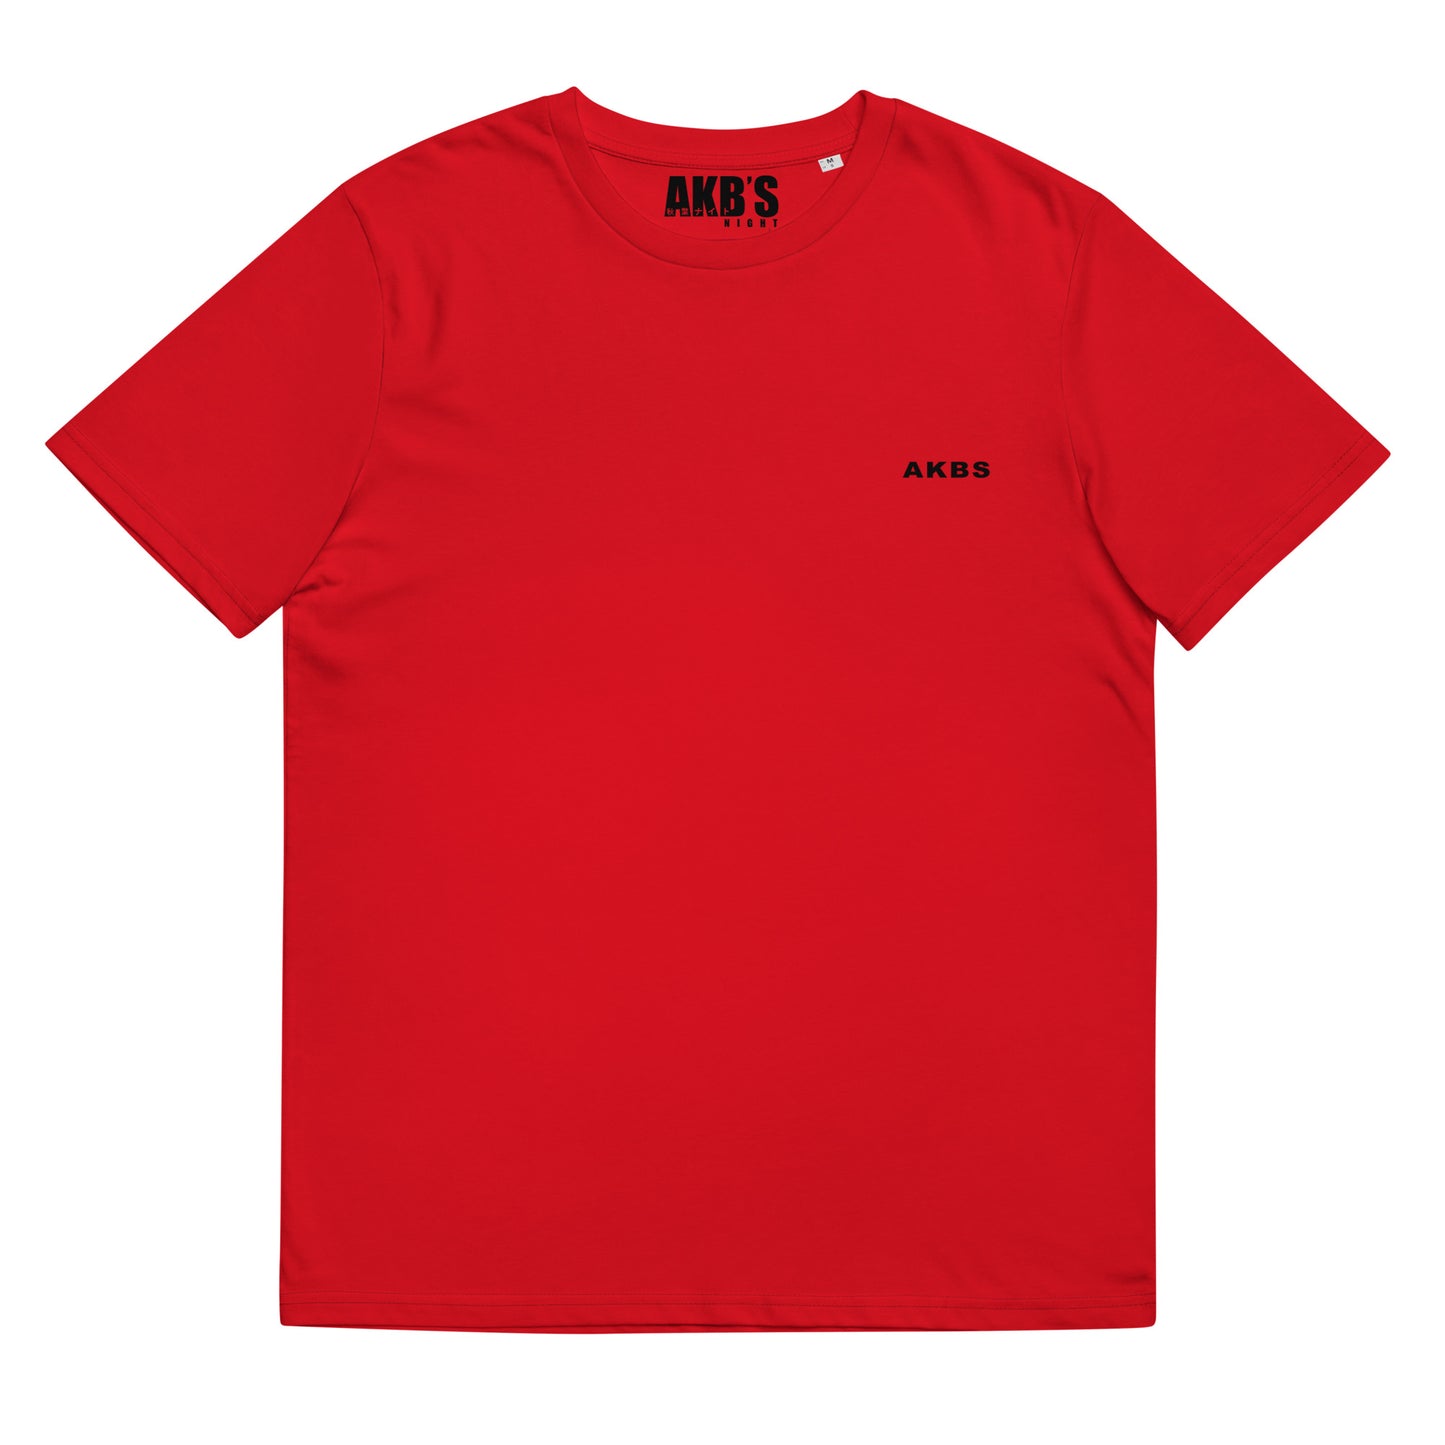 Camiseta Ryu